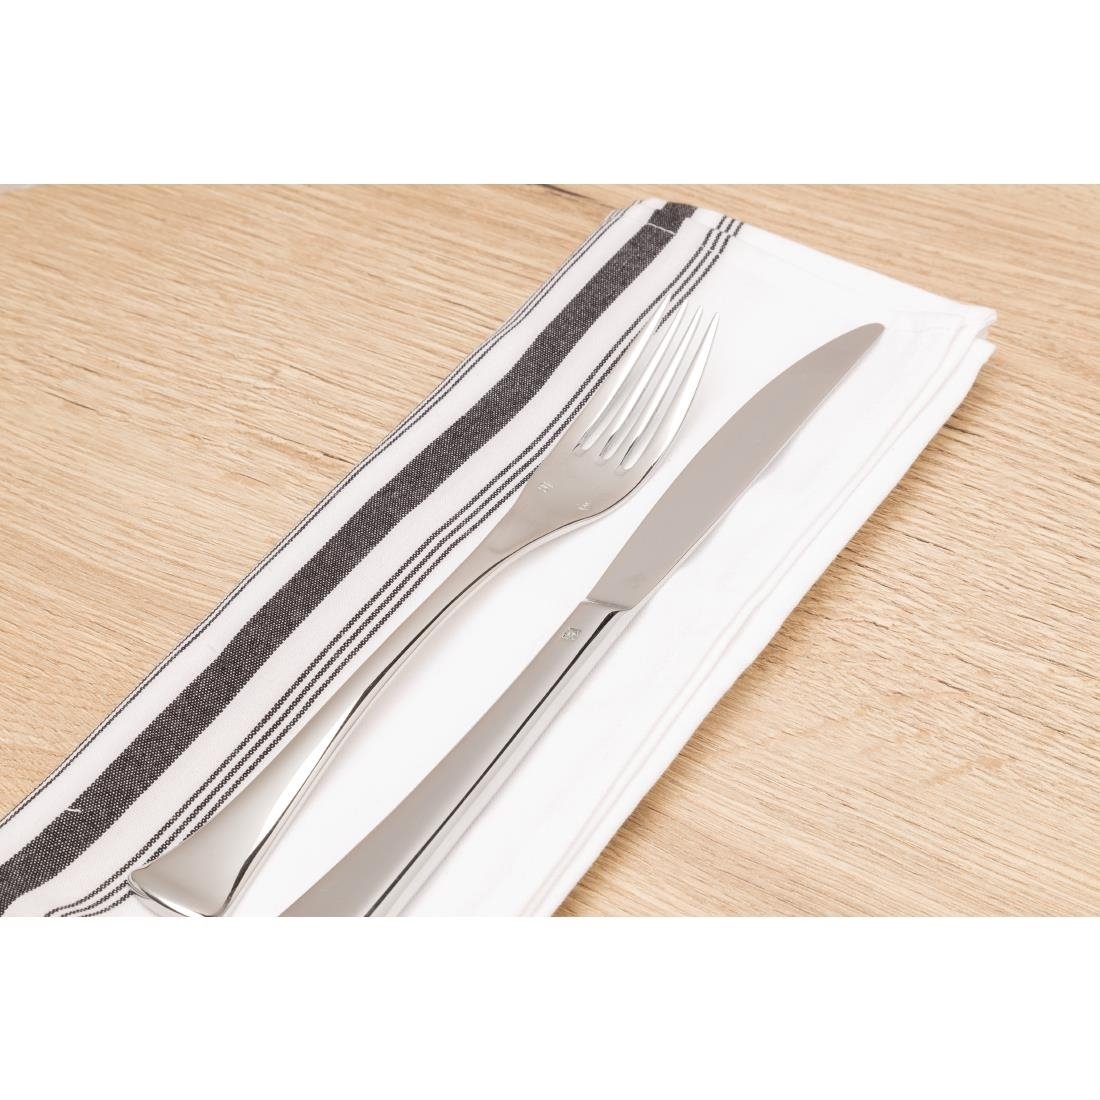 Serviettes de Table | 100% Polyester | 560x460mm | Lot de 10 Pièces | Disponible en 2 Couleurs